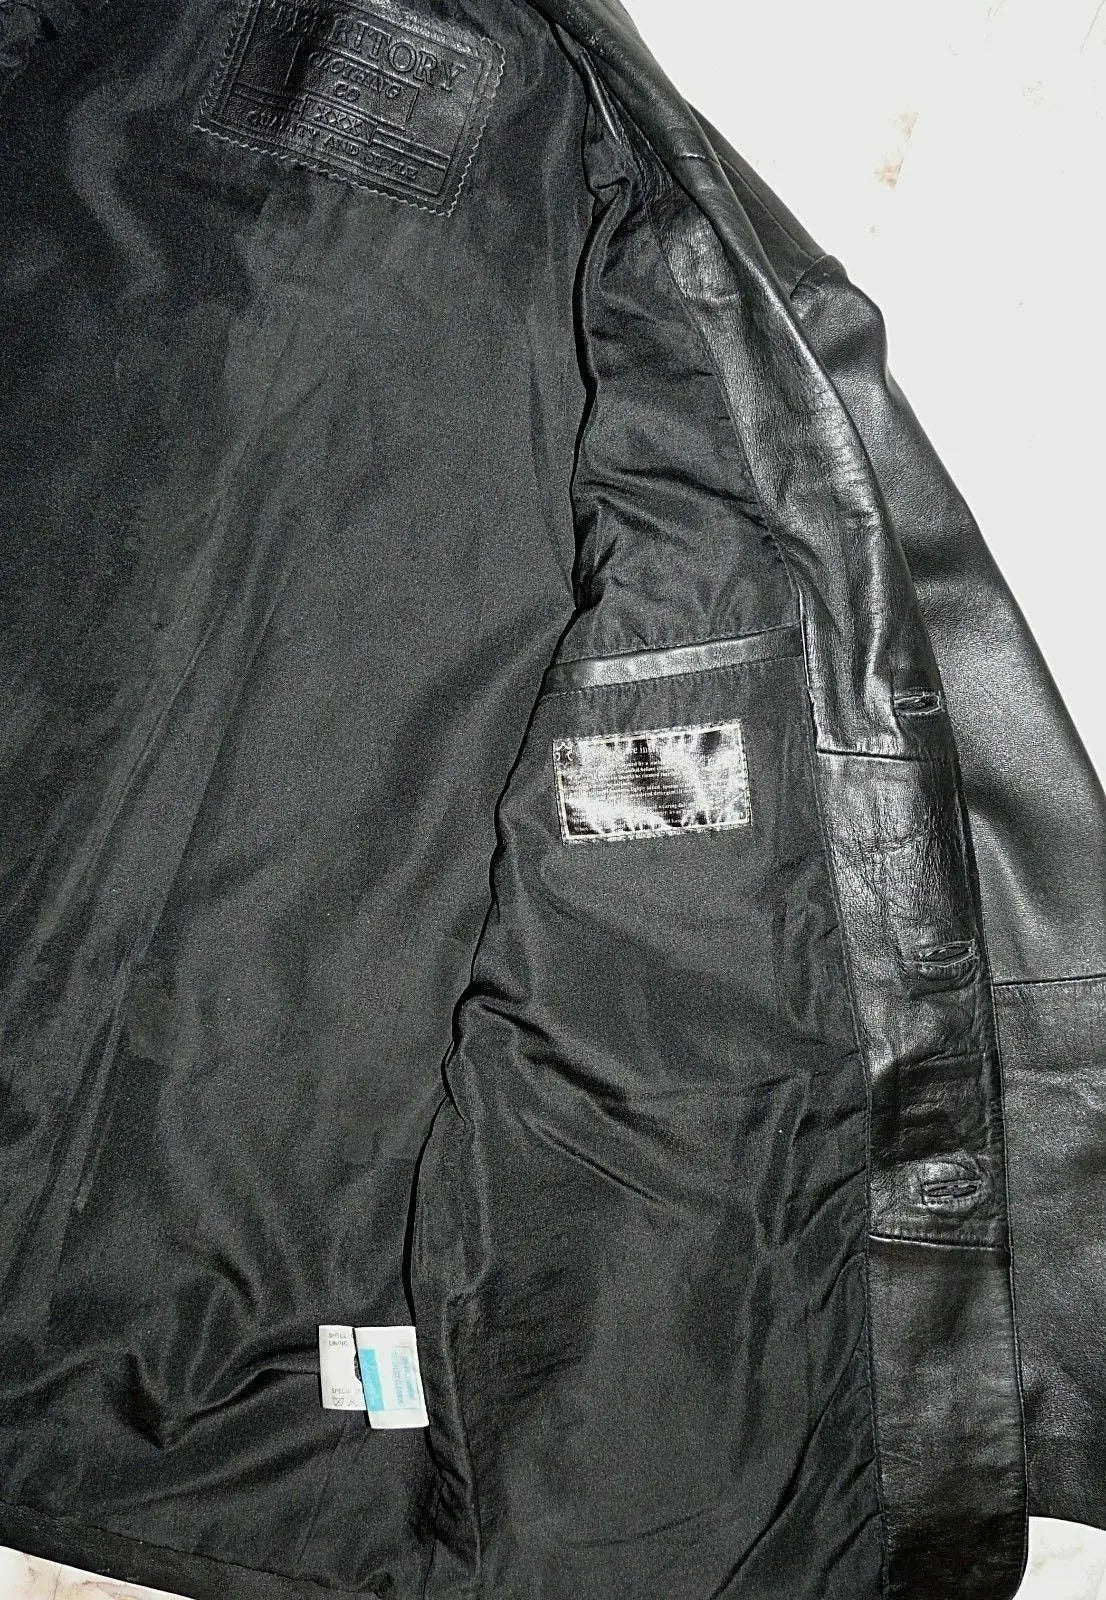 MENS BLACK LEATHER JACKET COAT  MEDIUM  'TERRITORY CLOTHING' CHEST 42" - 44" UK Territory Clothing Co.